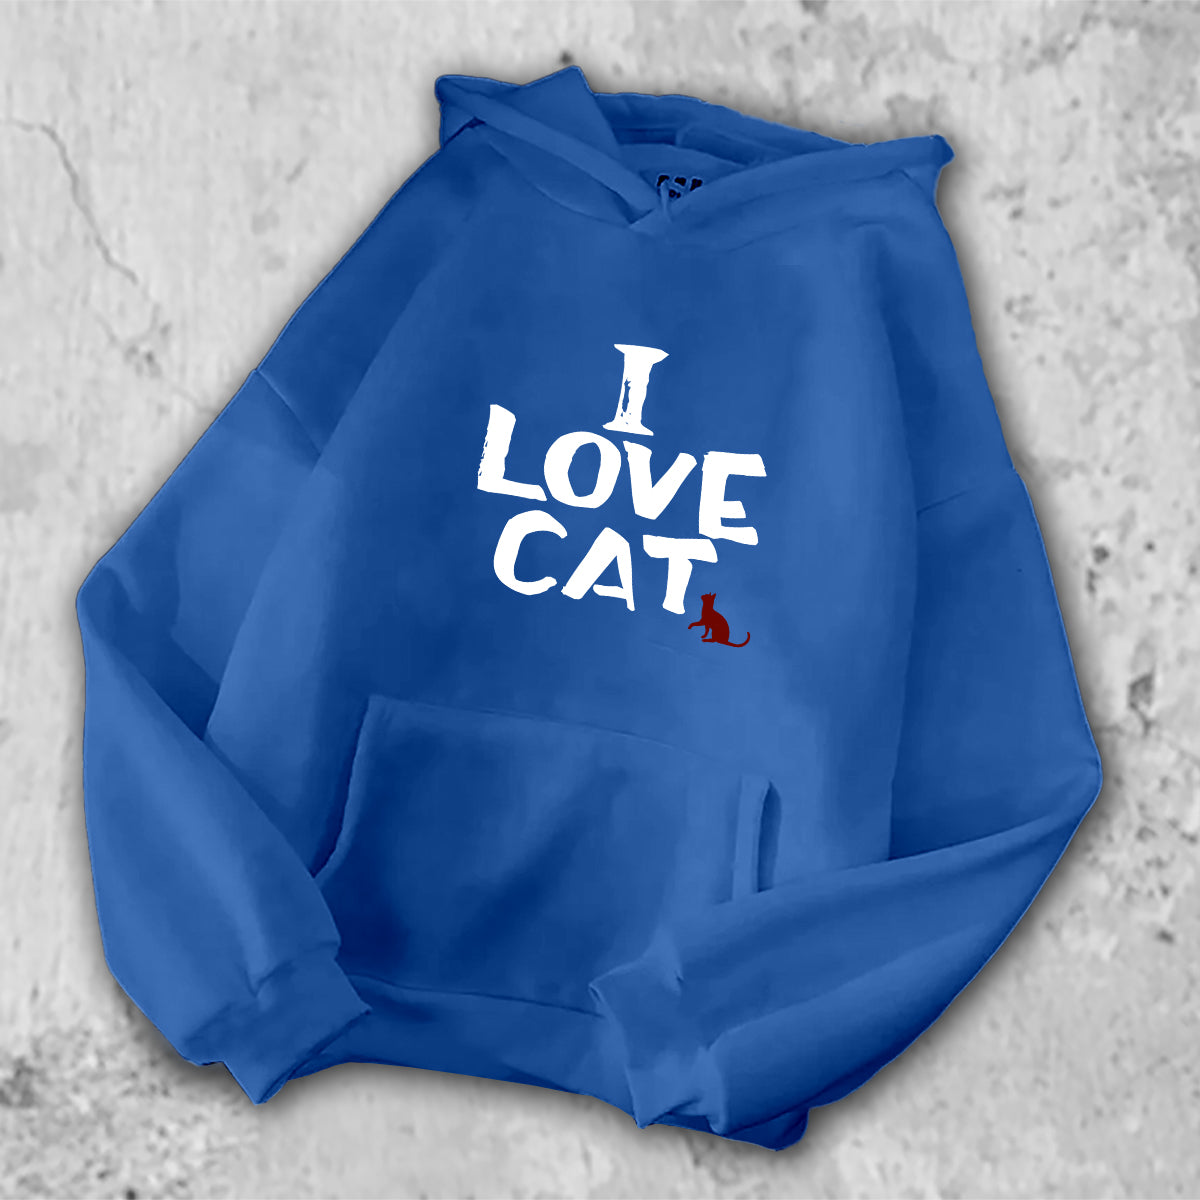 I LOVE CAT パーカー ブルー